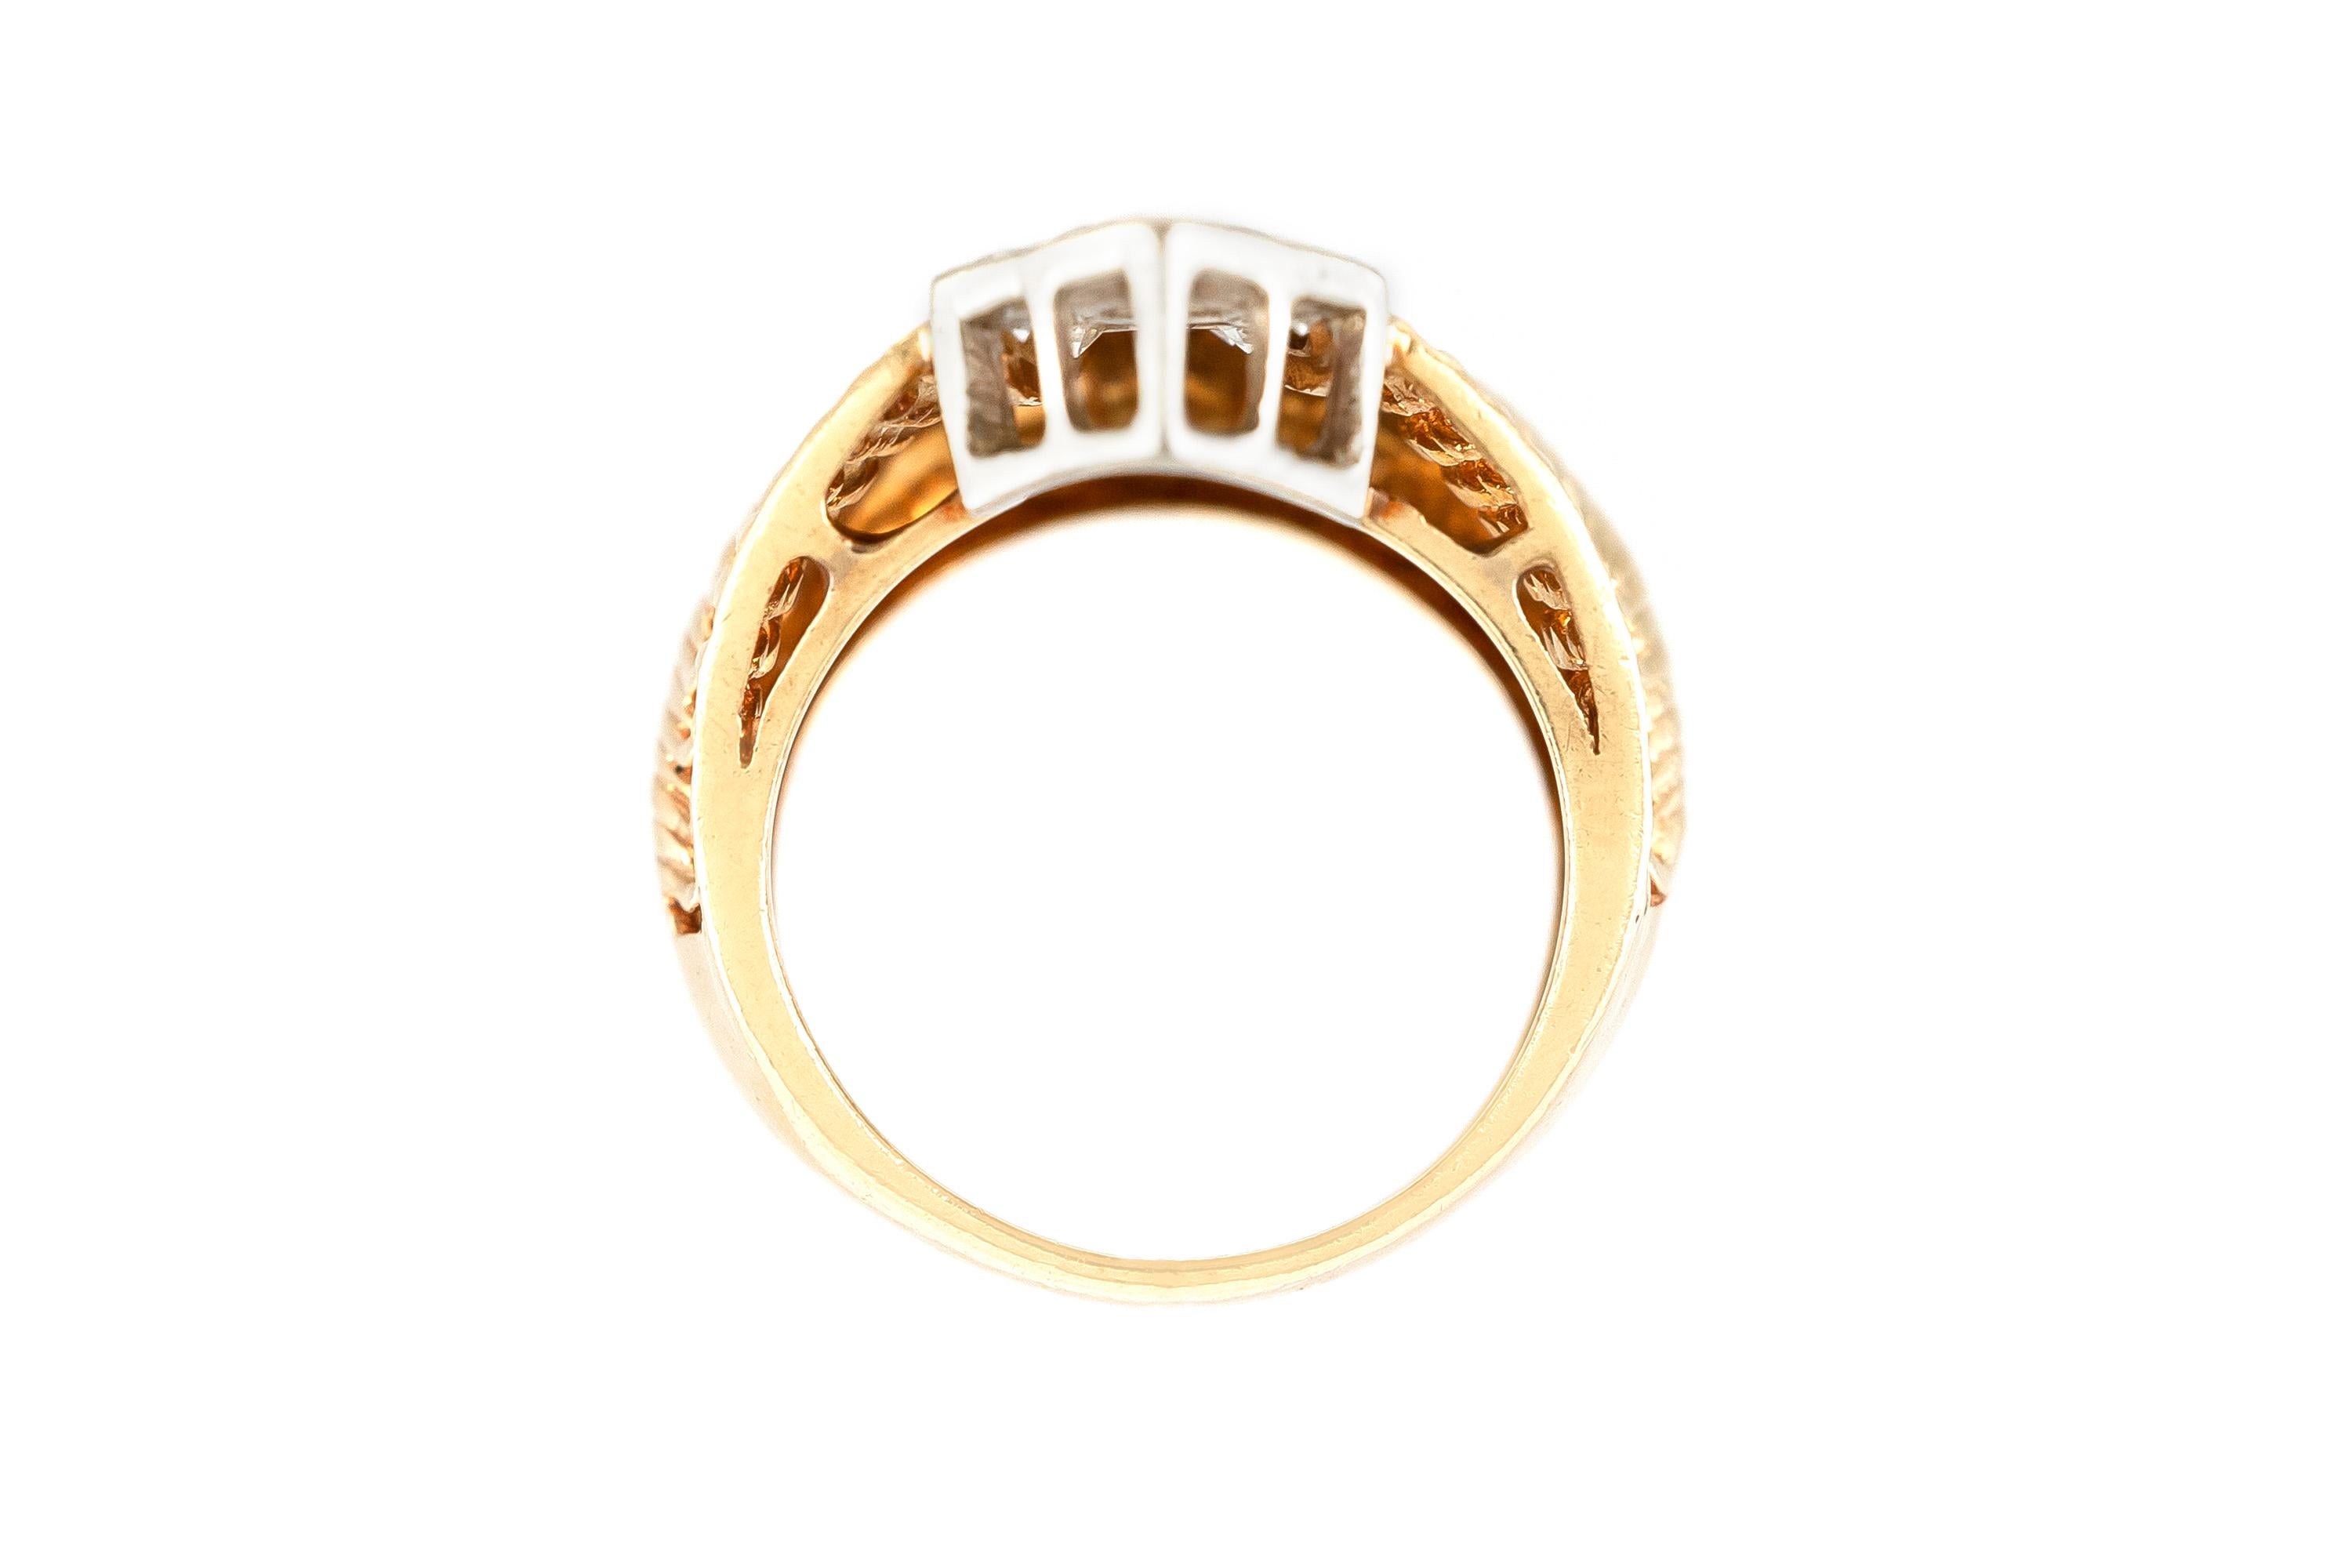 Der Ring ist fein in 14k Gelbgold mit Diamanten mit einem Gesamtgewicht von etwa 1,50 Karat gefertigt.
CIRCA 1960